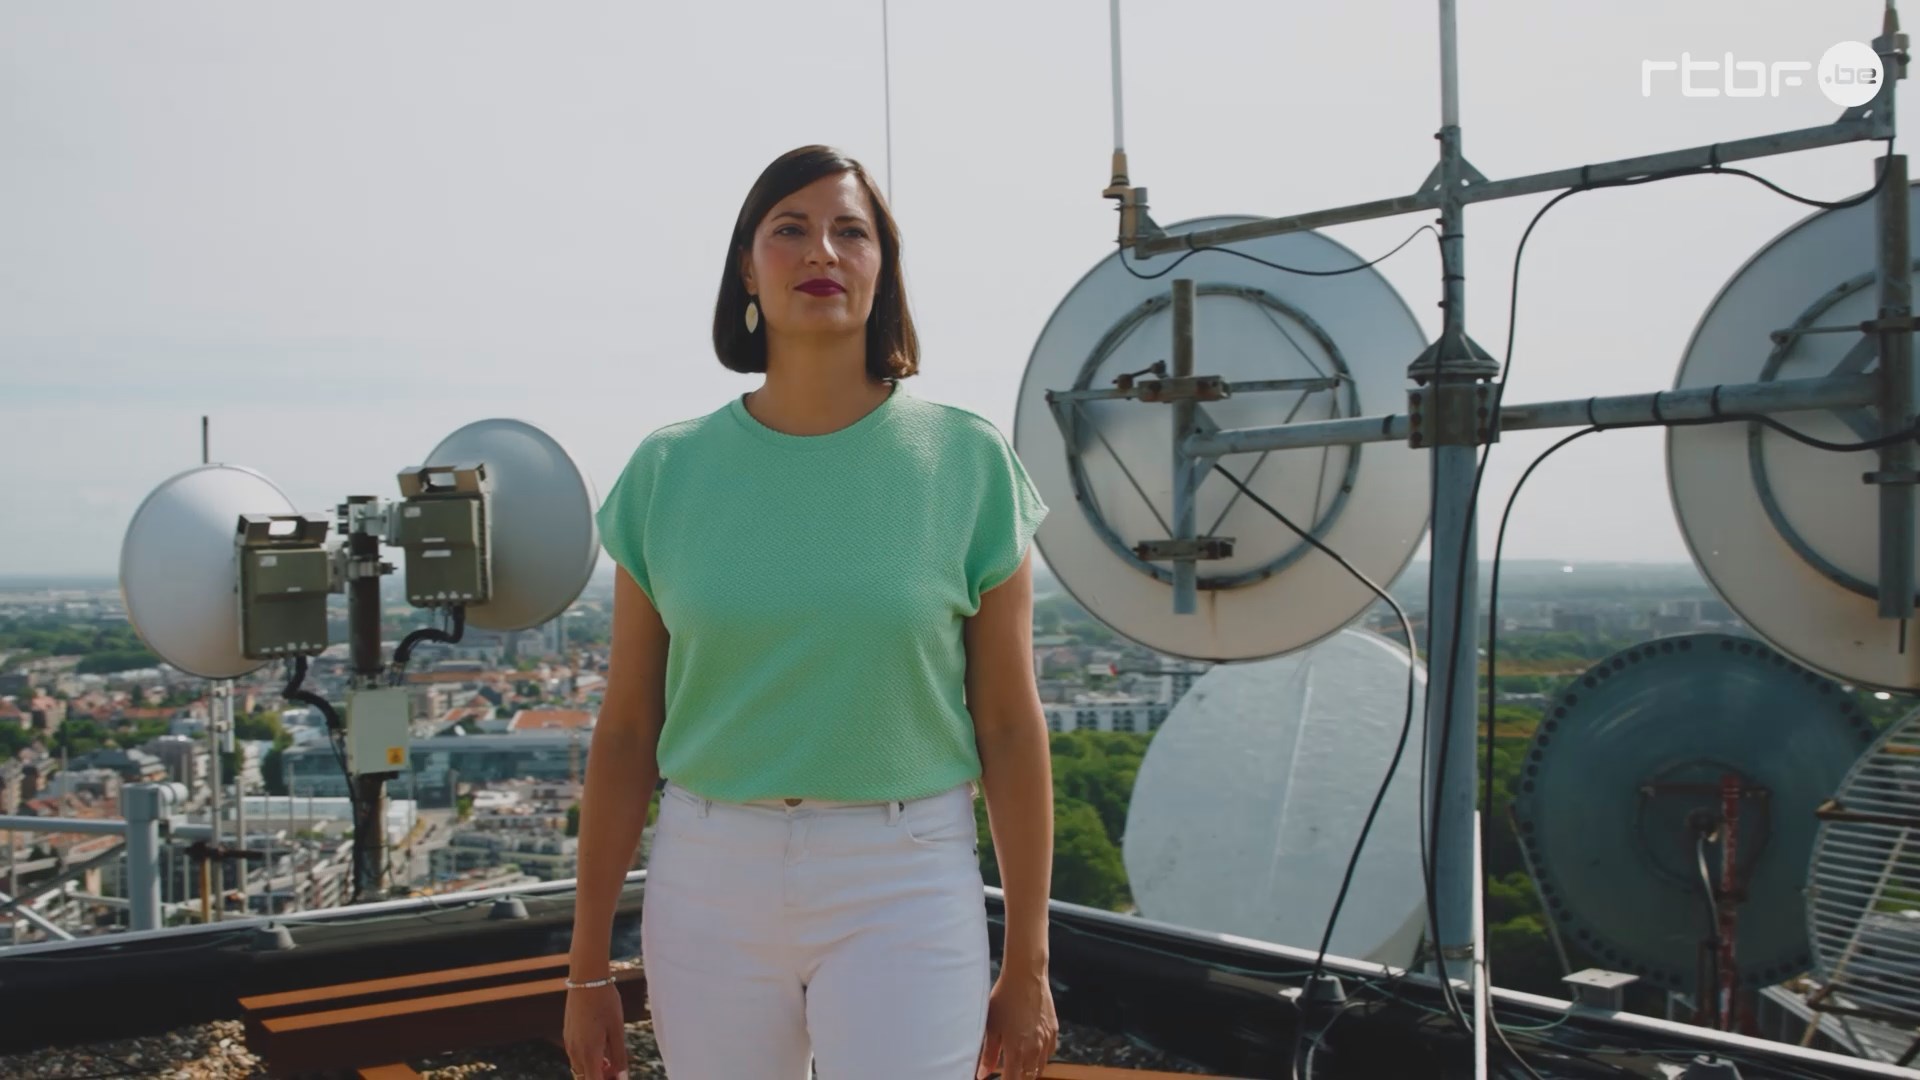 Sur le toit de la Tour Reyers, Justine, responsable éditorial investigation à la RTBF, prend la pose. Les antennes de diffusion sont visibles en arrière-plan.